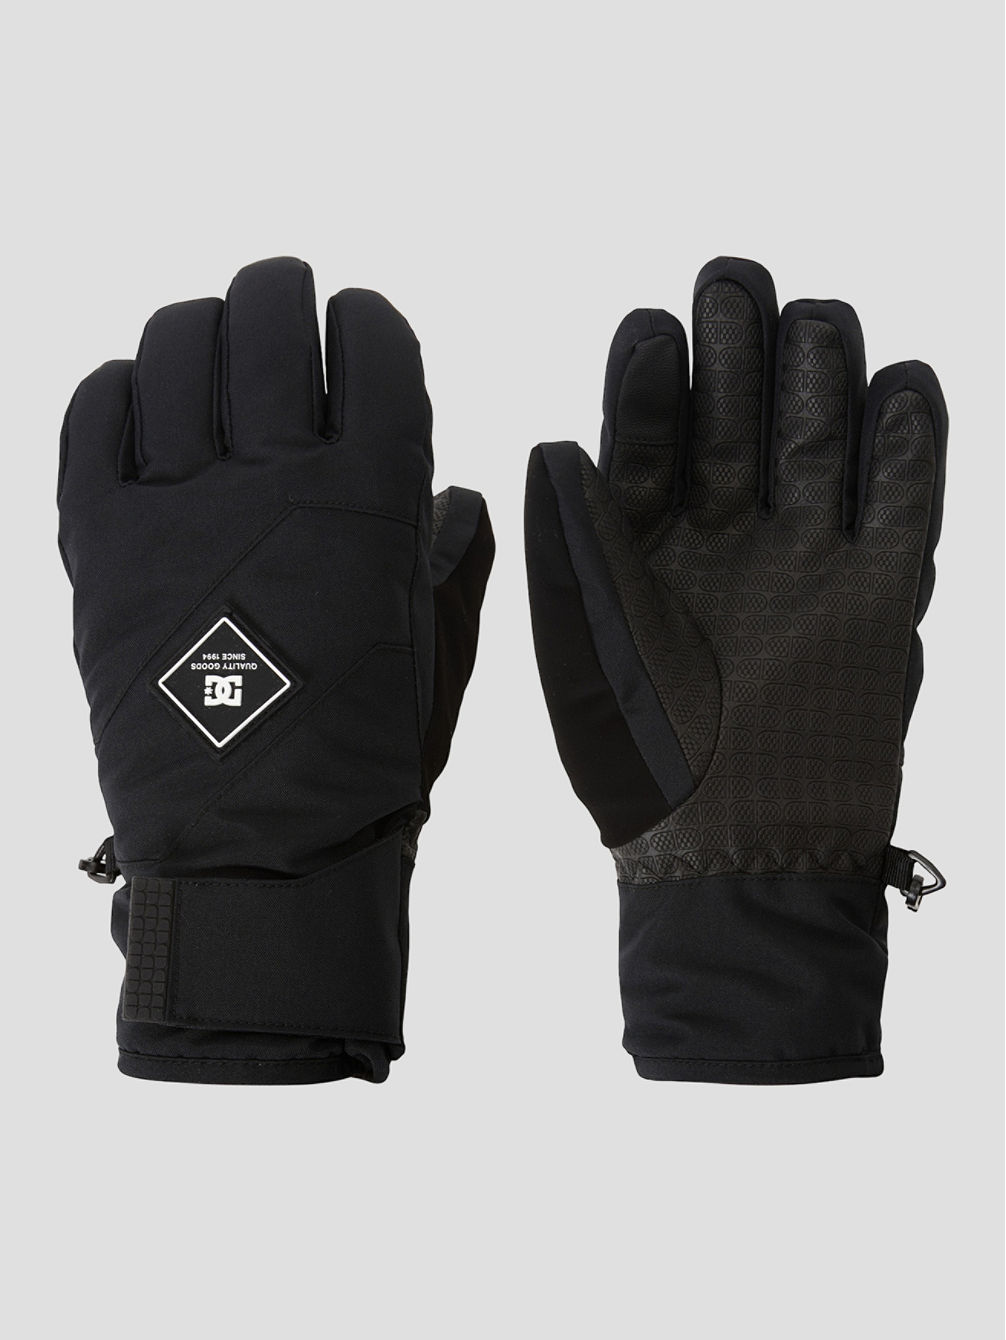 Franchise Gloves